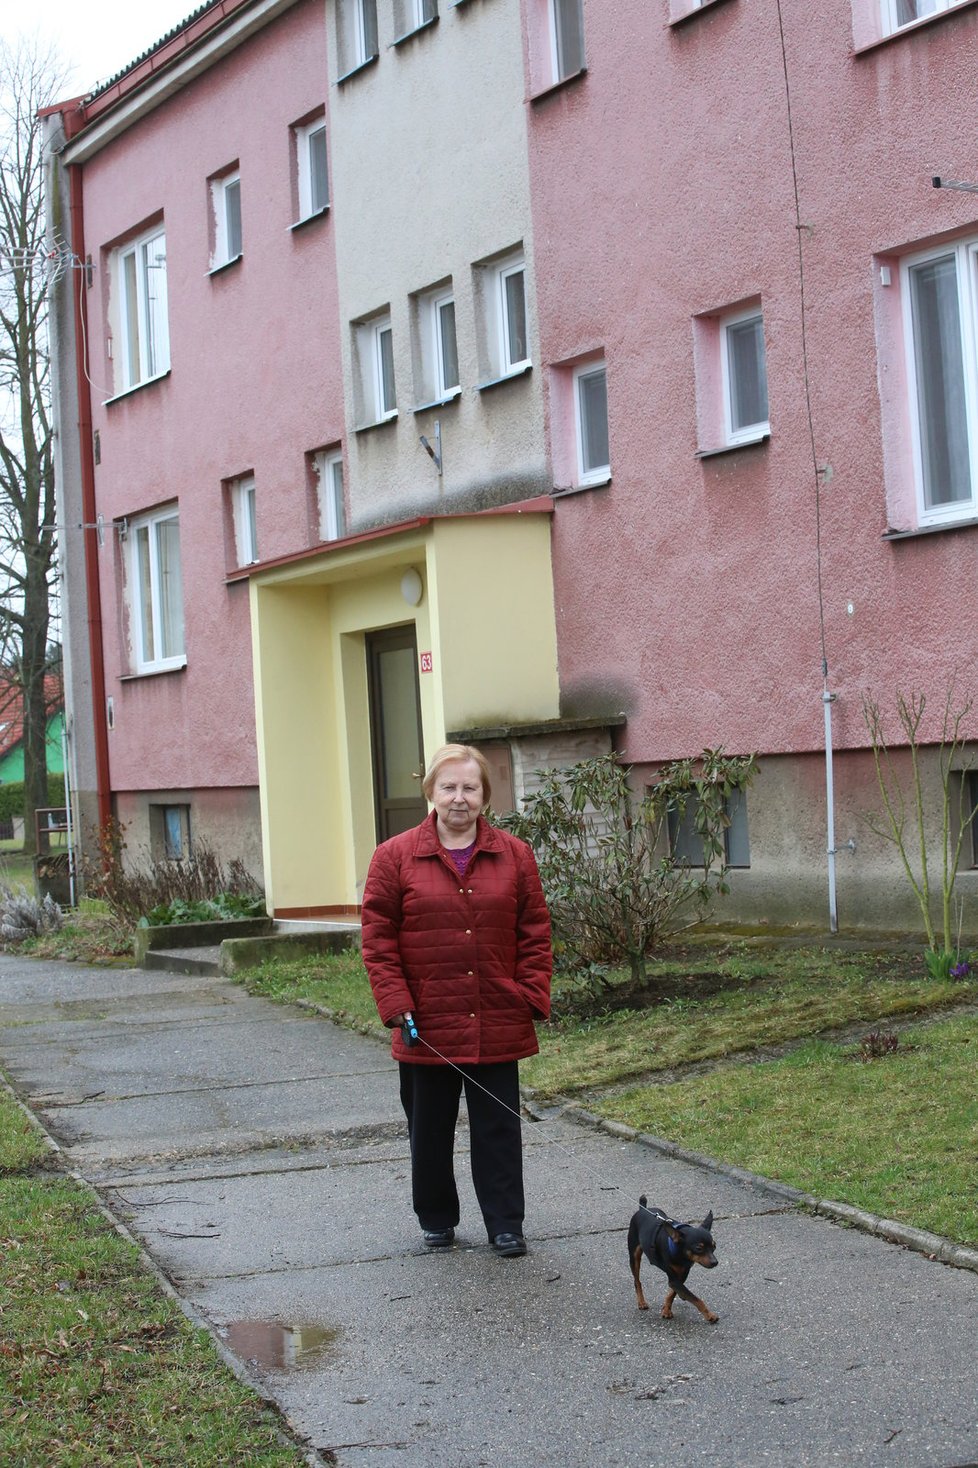 Paní Formánková dala dceři byt. Teď se ale bojí, aby nepřišla o střechu nad hlavou.